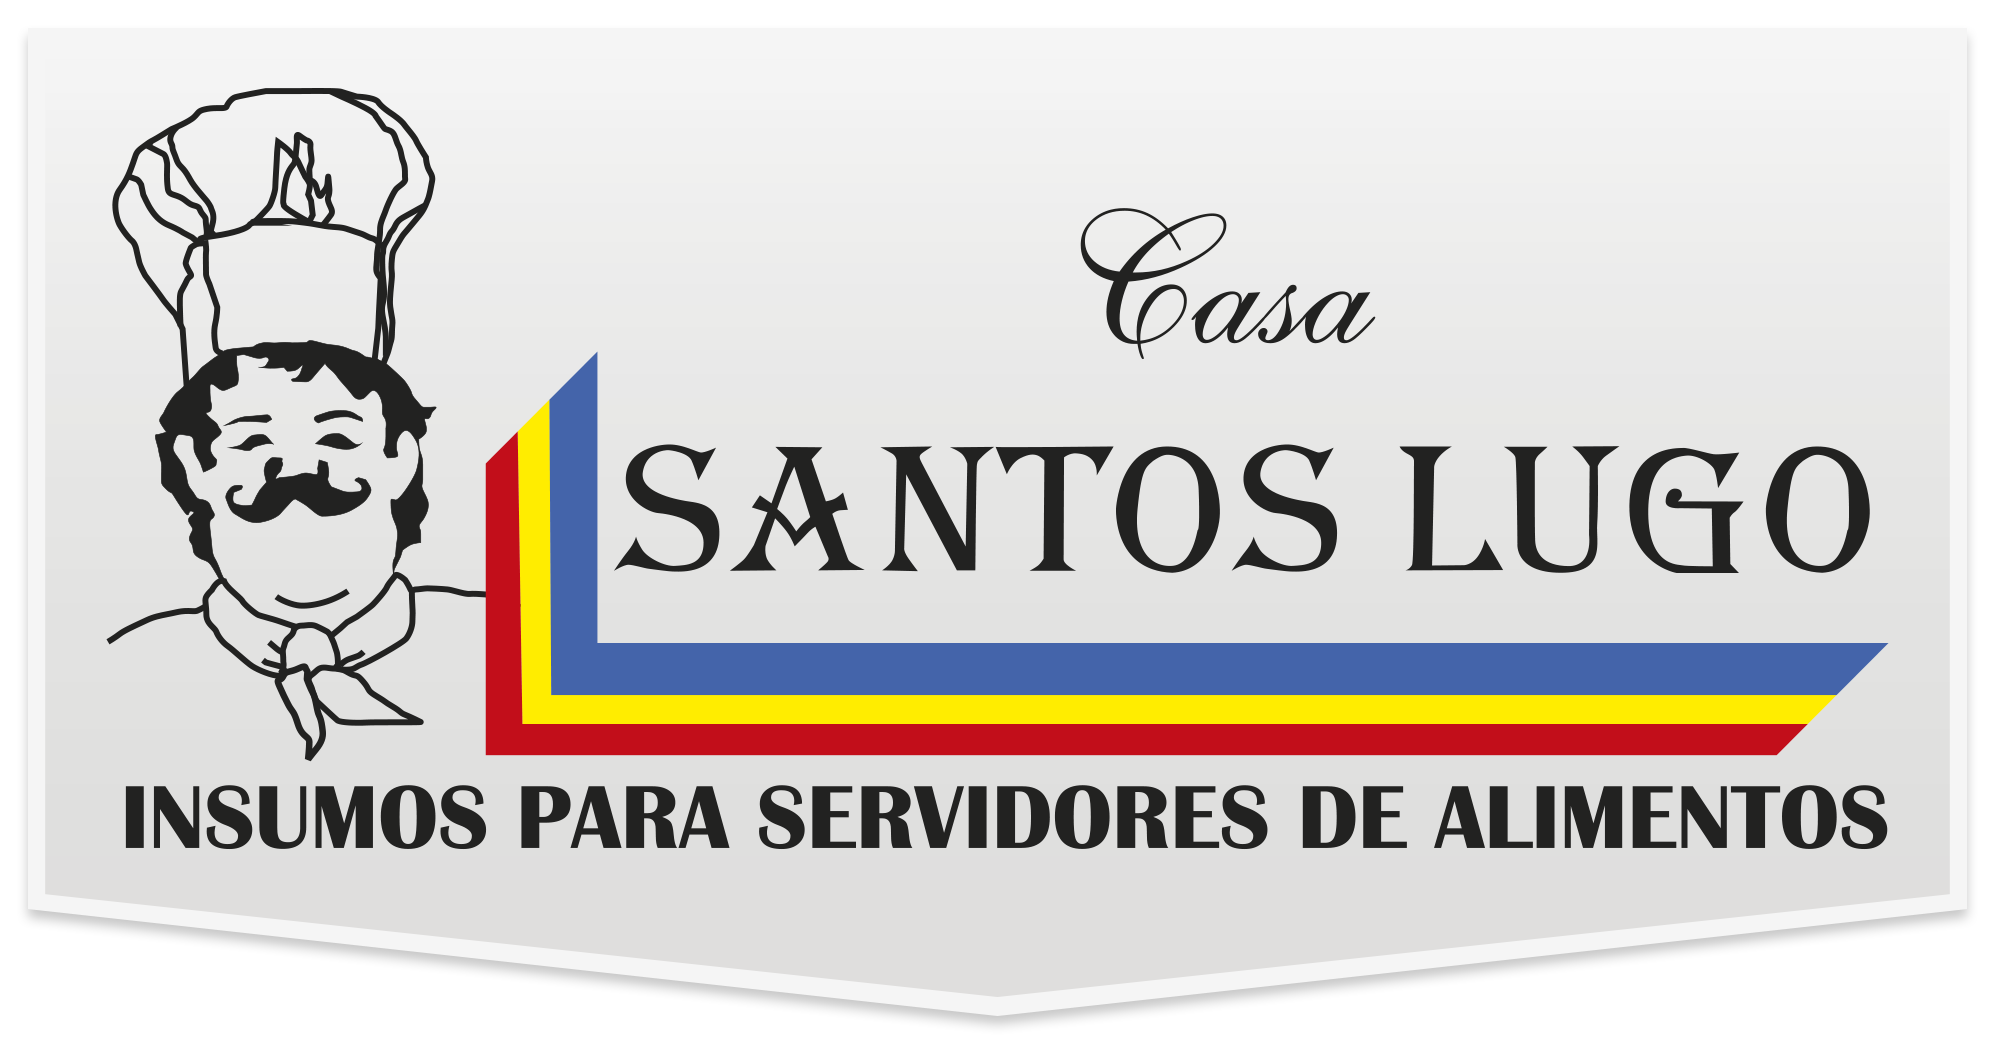 Santos Lugo | Categoría Repostería